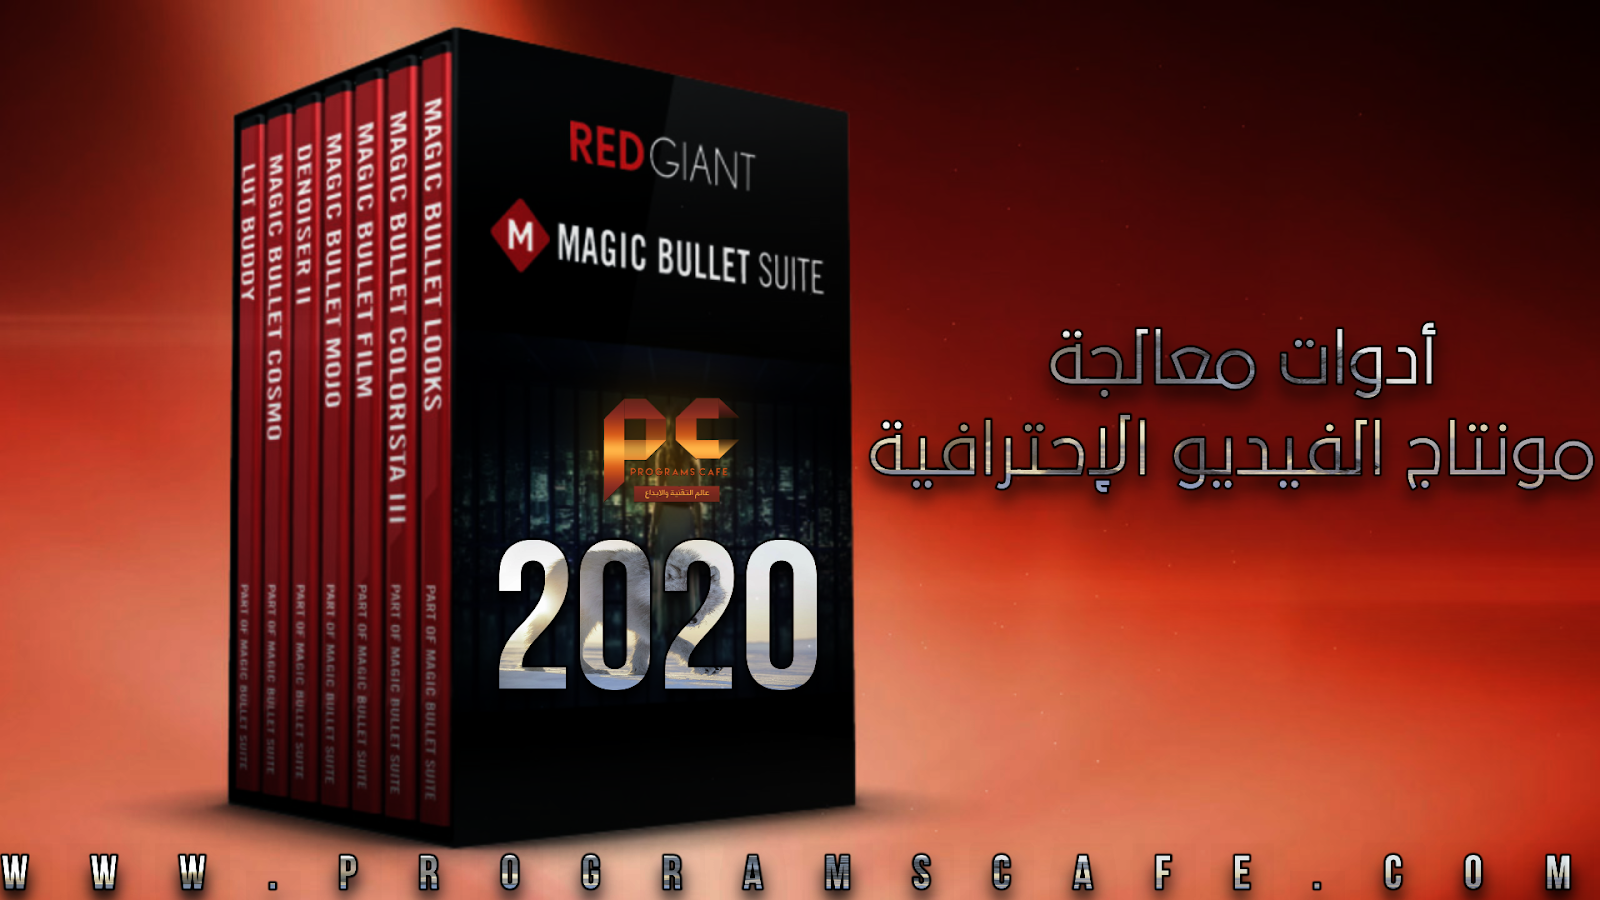 Red giant Magic Bullet. Magic Bullet Suite. Magic Bullet Suite 13. Red giant Magic Bullet Key.